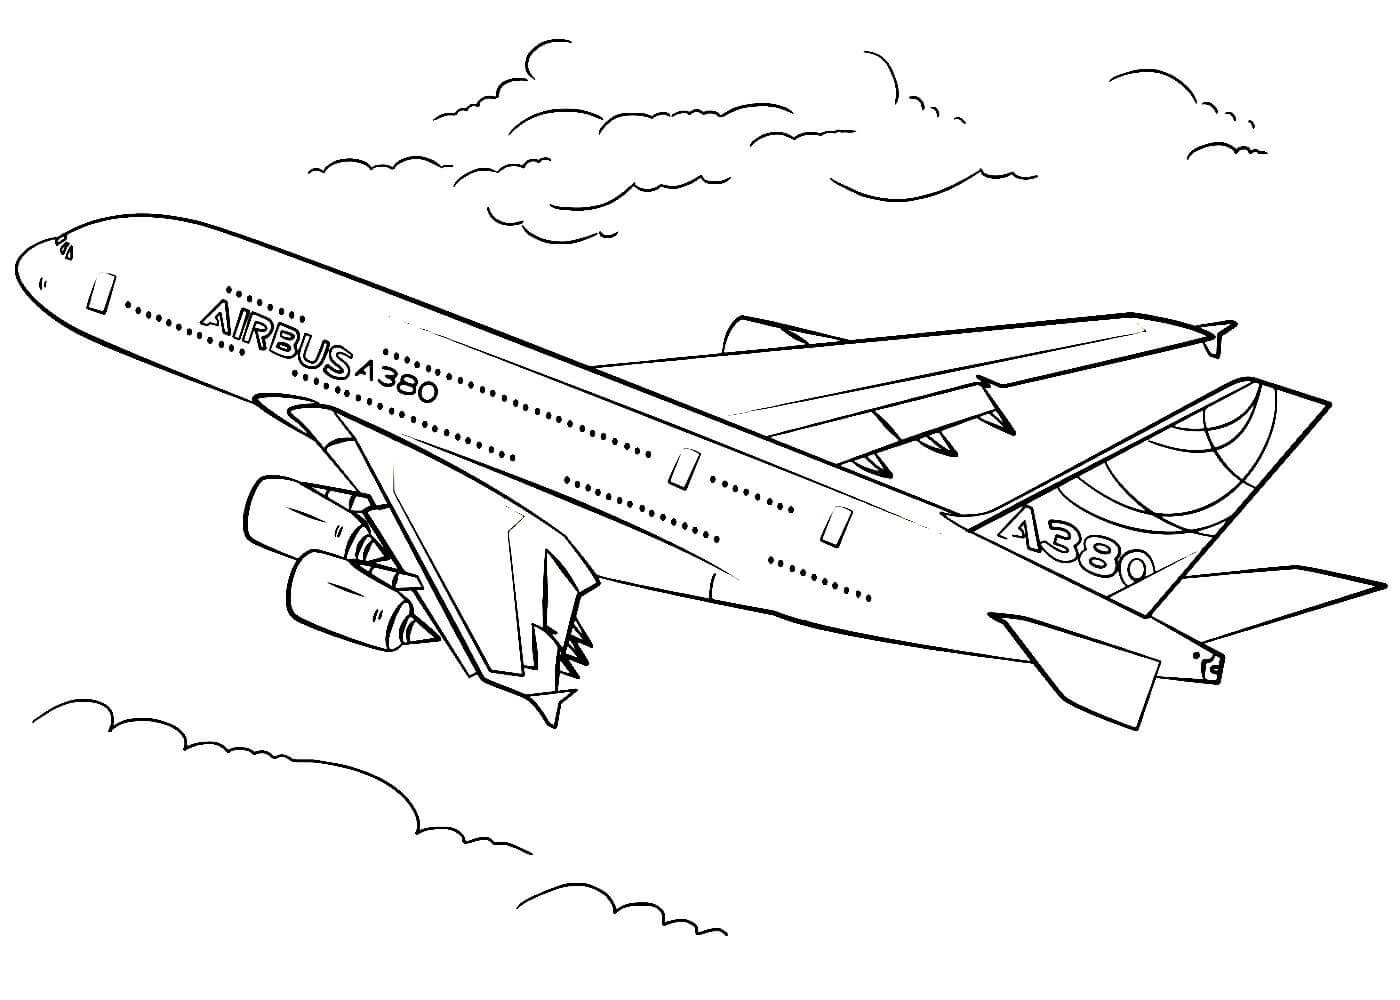 Покажи рисунки самолета. Раскраска Airbus a380. Раскраска самолет Аэробус а380. Раскраска самолета Airbus a380. Разукрашка самолет Боинг.